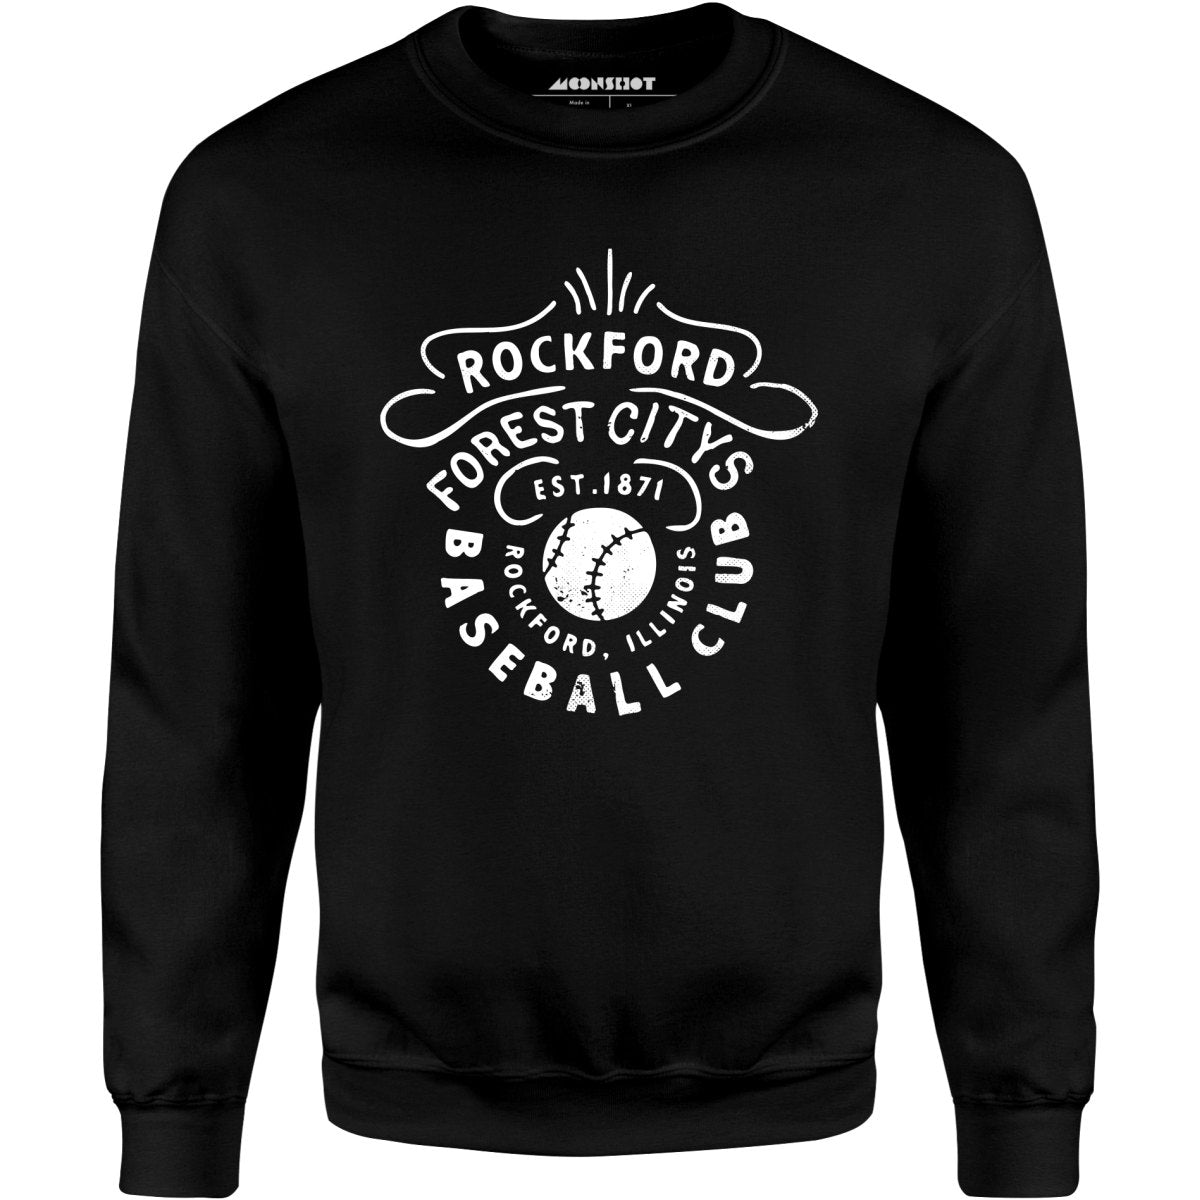 Rockford Forest Citys - Illinois - Vintage Defunct Baseball Teams - Unisex Sweatshirt